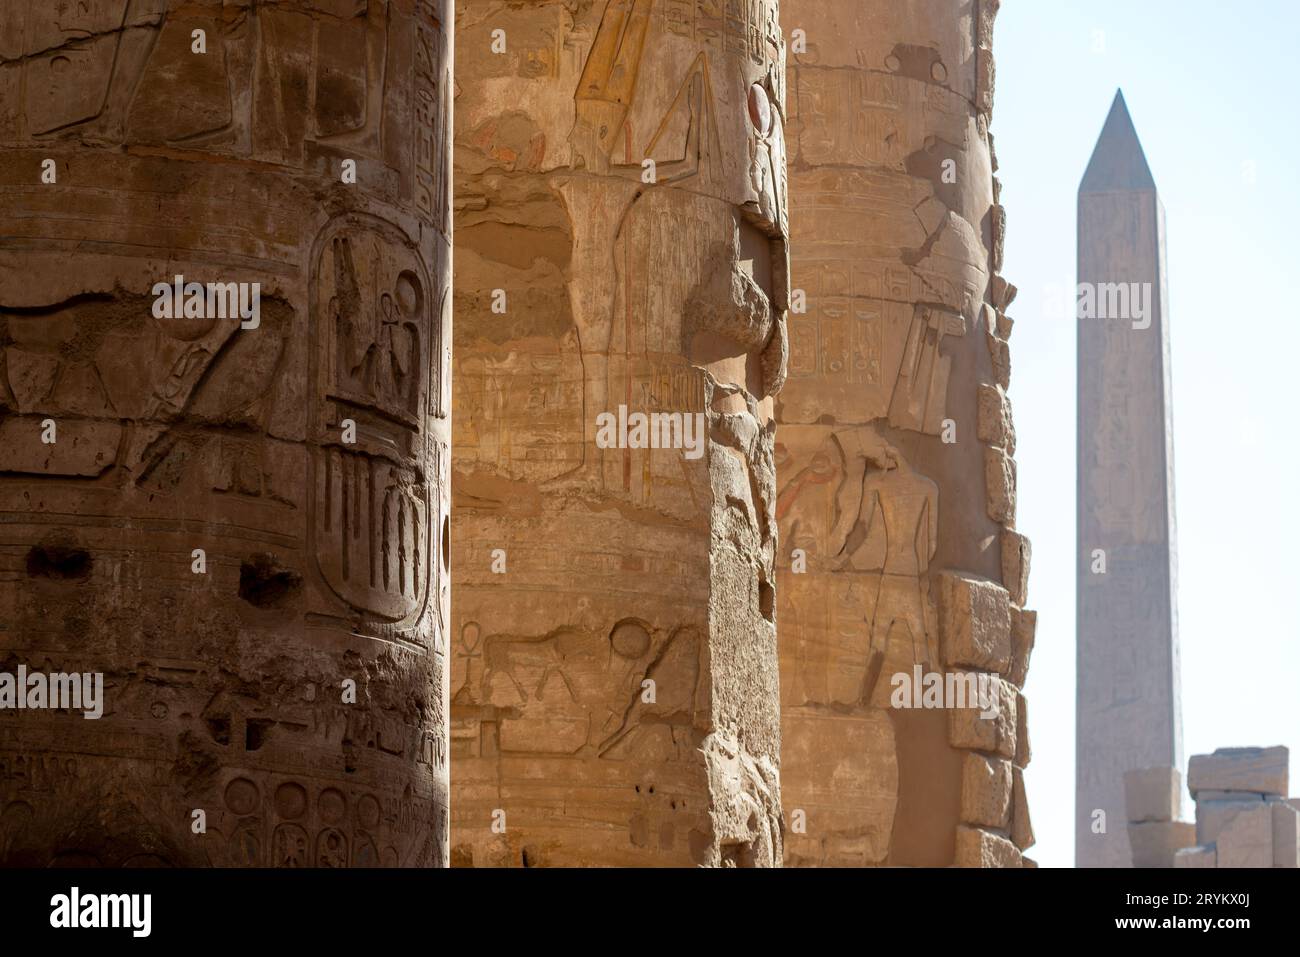 Colonnes couvertes de hiéroglyphes au temple de Karnak, en Égypte Banque D'Images